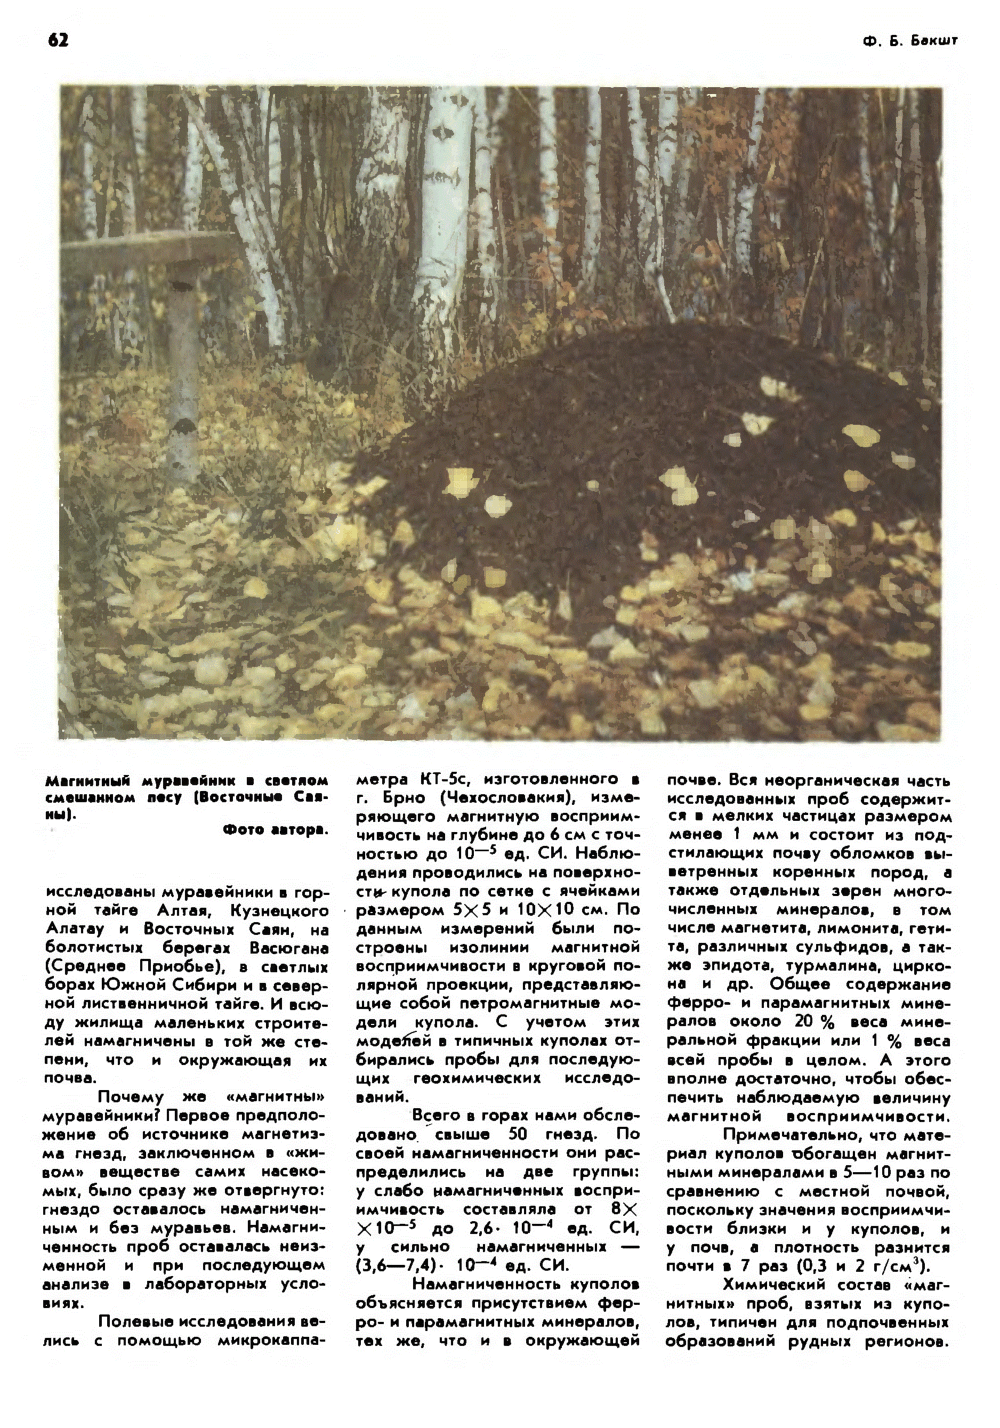 Магнитные муравейники. Ф. Б. Бакшт. Природа, 1990, №7, с.60-63. Фотокопия №3